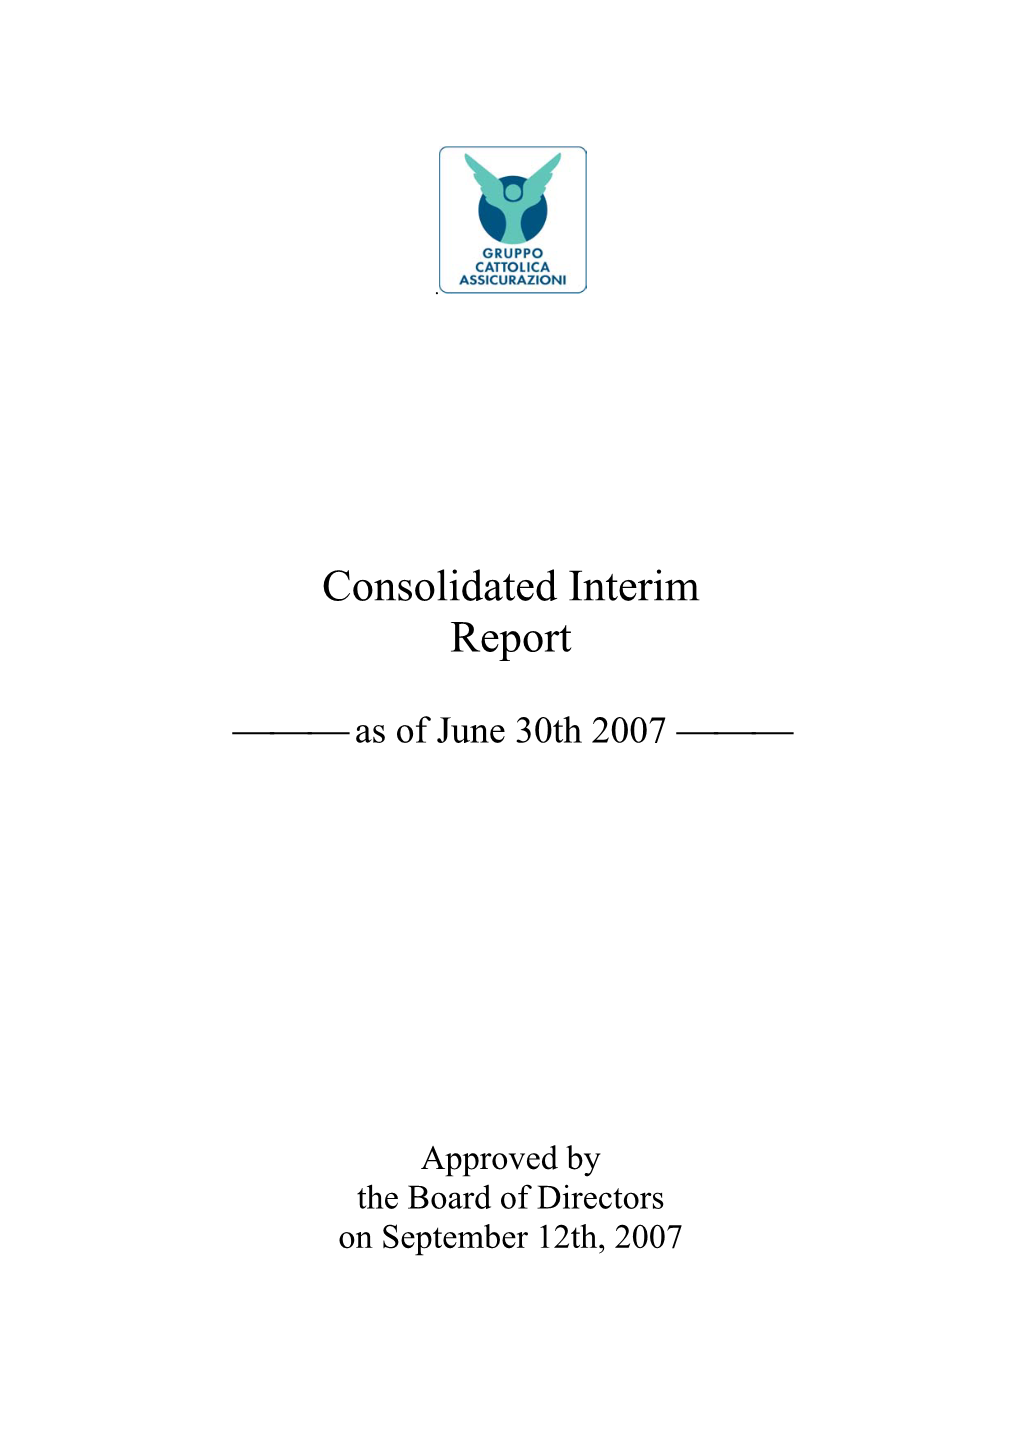 Consolidated Interim Report